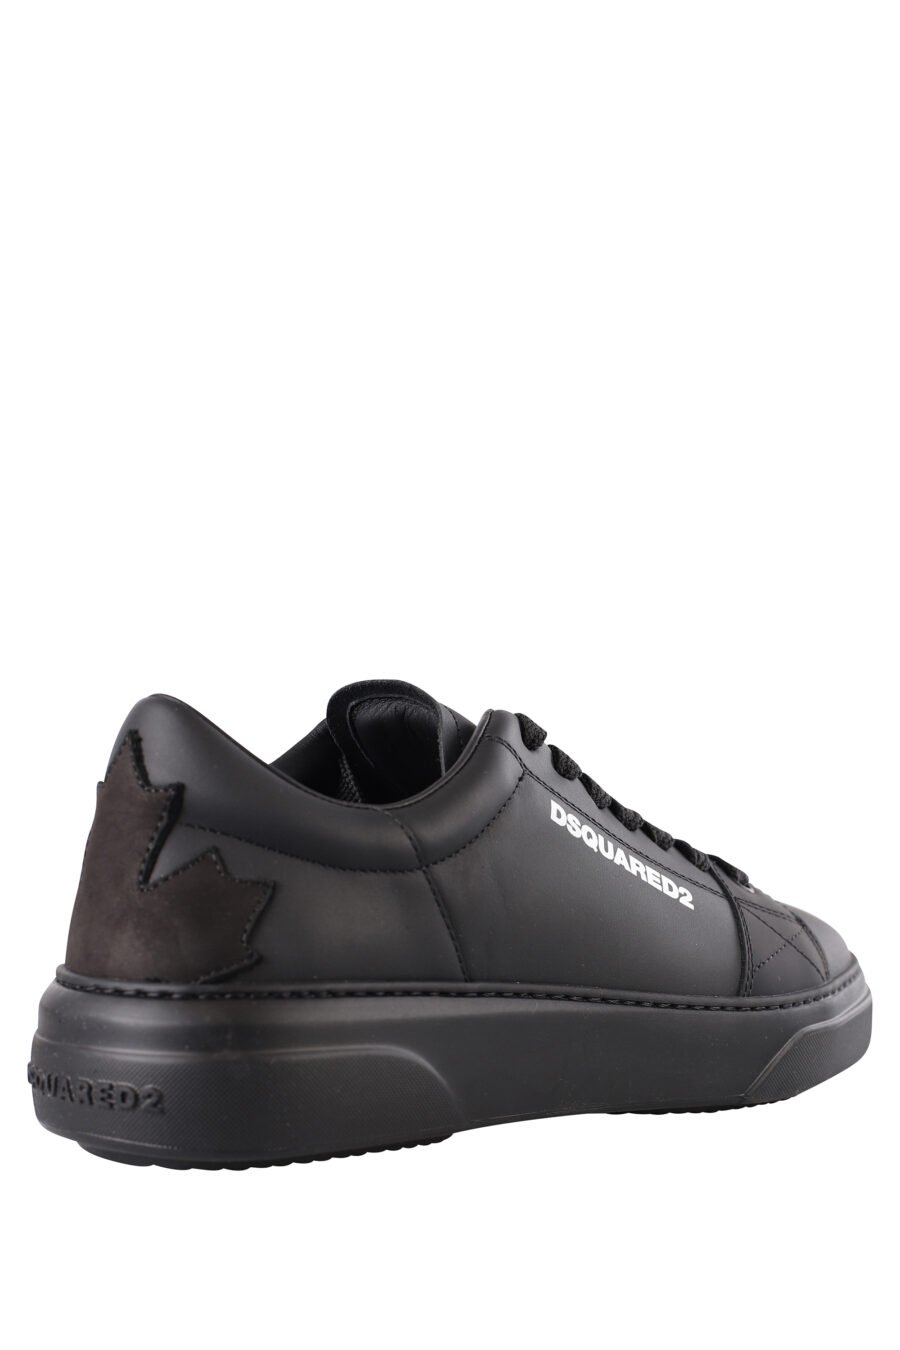 Zapatillas negras con logo blanco pequeño y suela negra - IMG 1149